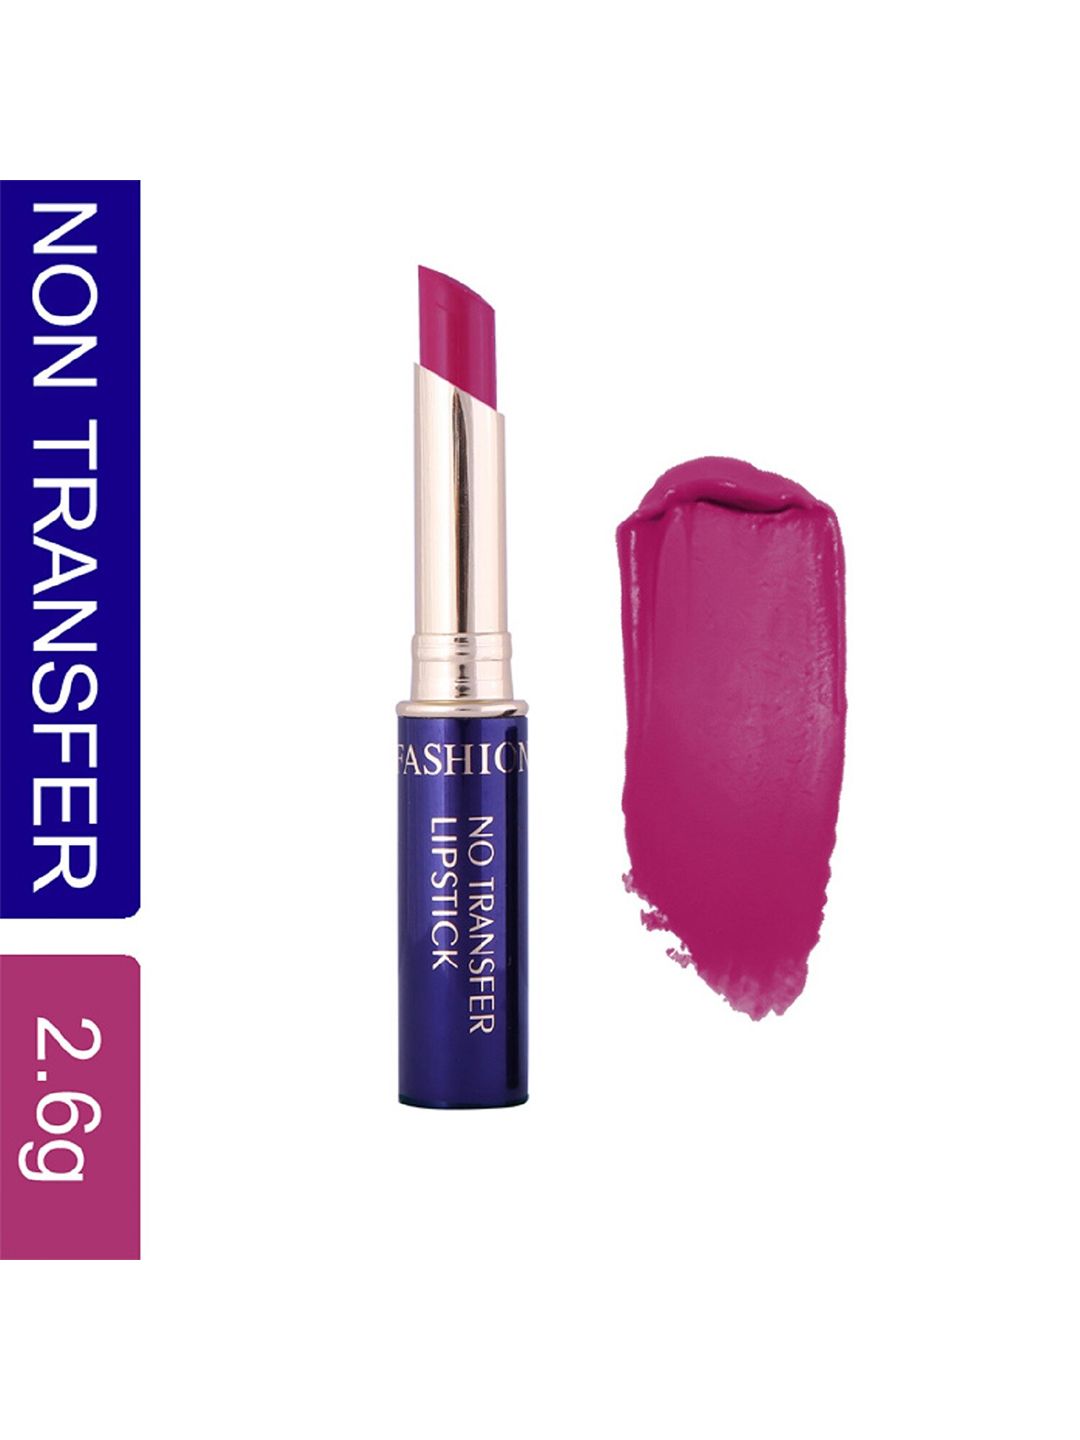 Fashion Colour Non-Transfer Waterproof Matte Lipstick - Vivid Lilac 60 Price in India